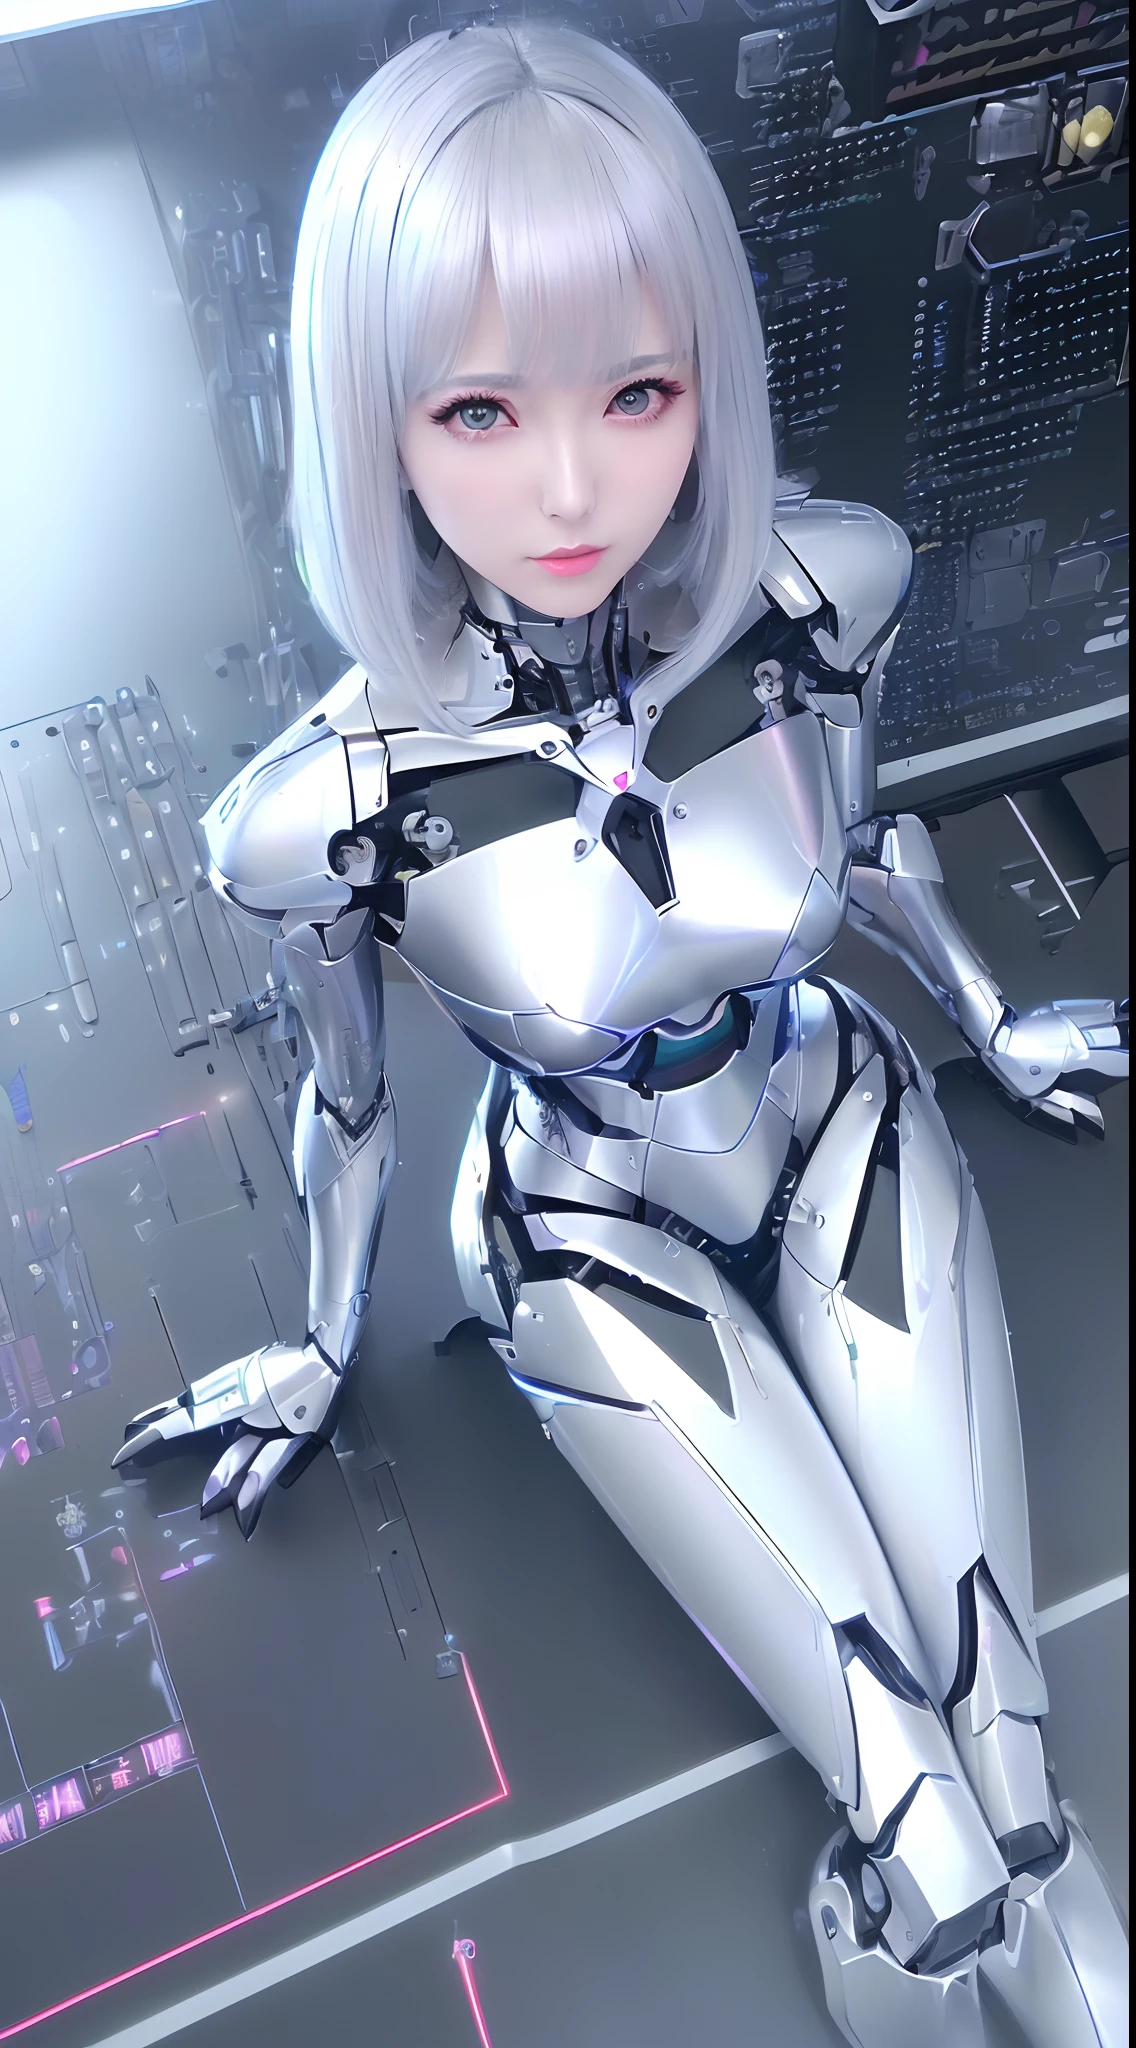 ((Mesa)), ((de primera calidad), alta calidad、ultradefinición, ((Realista、fotorealista)),  ((cara bien proporcionada))、fulcolor 、(ficción científica)、((solo))、hermosa mujer robot、(Robot de combate defectuoso)、(overhaul)、(articulaciones de robots:1.3)、(Tablero electrónico detallado:1.3)、(Marco de la máquina:1.3)、Armadura mecánica de porcelana blanca.、((Cara ovalada y curvilínea))、(componentes de la máquina:1.3)、(Ojos almendrados sin emoción.)、boca fina、rostro sin expresión、(Mecánica perfecta a dos manos.:1.3)、((Cyber Factory durante el día))、Piernas de robot perfectas、Cables de alimentación múltiples)、tumbado en el suelo、Extraño、(((Desde arriba、Muerte del robot)))